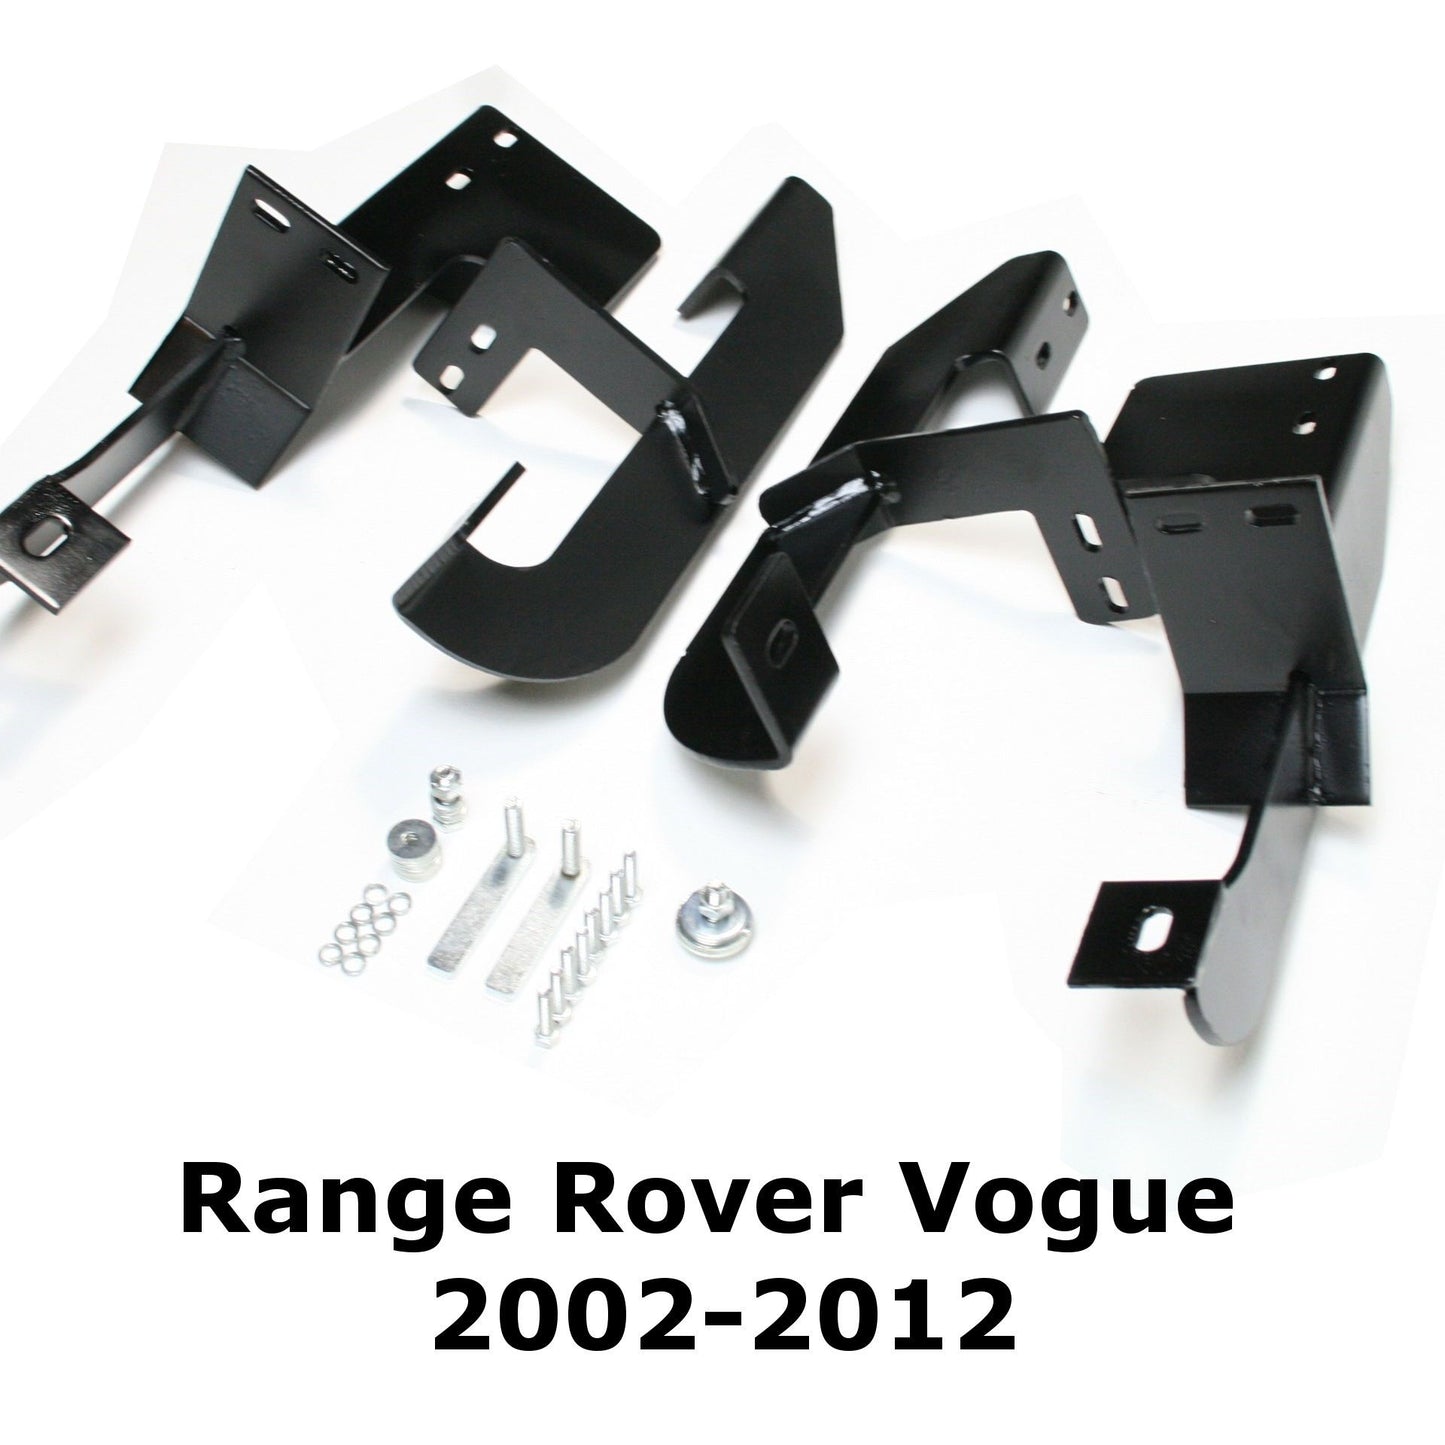 Black Raptor Side Steps Running Boards for Range Rover Vogue 2002-2012 (L322) -  - sold by Direct4x4